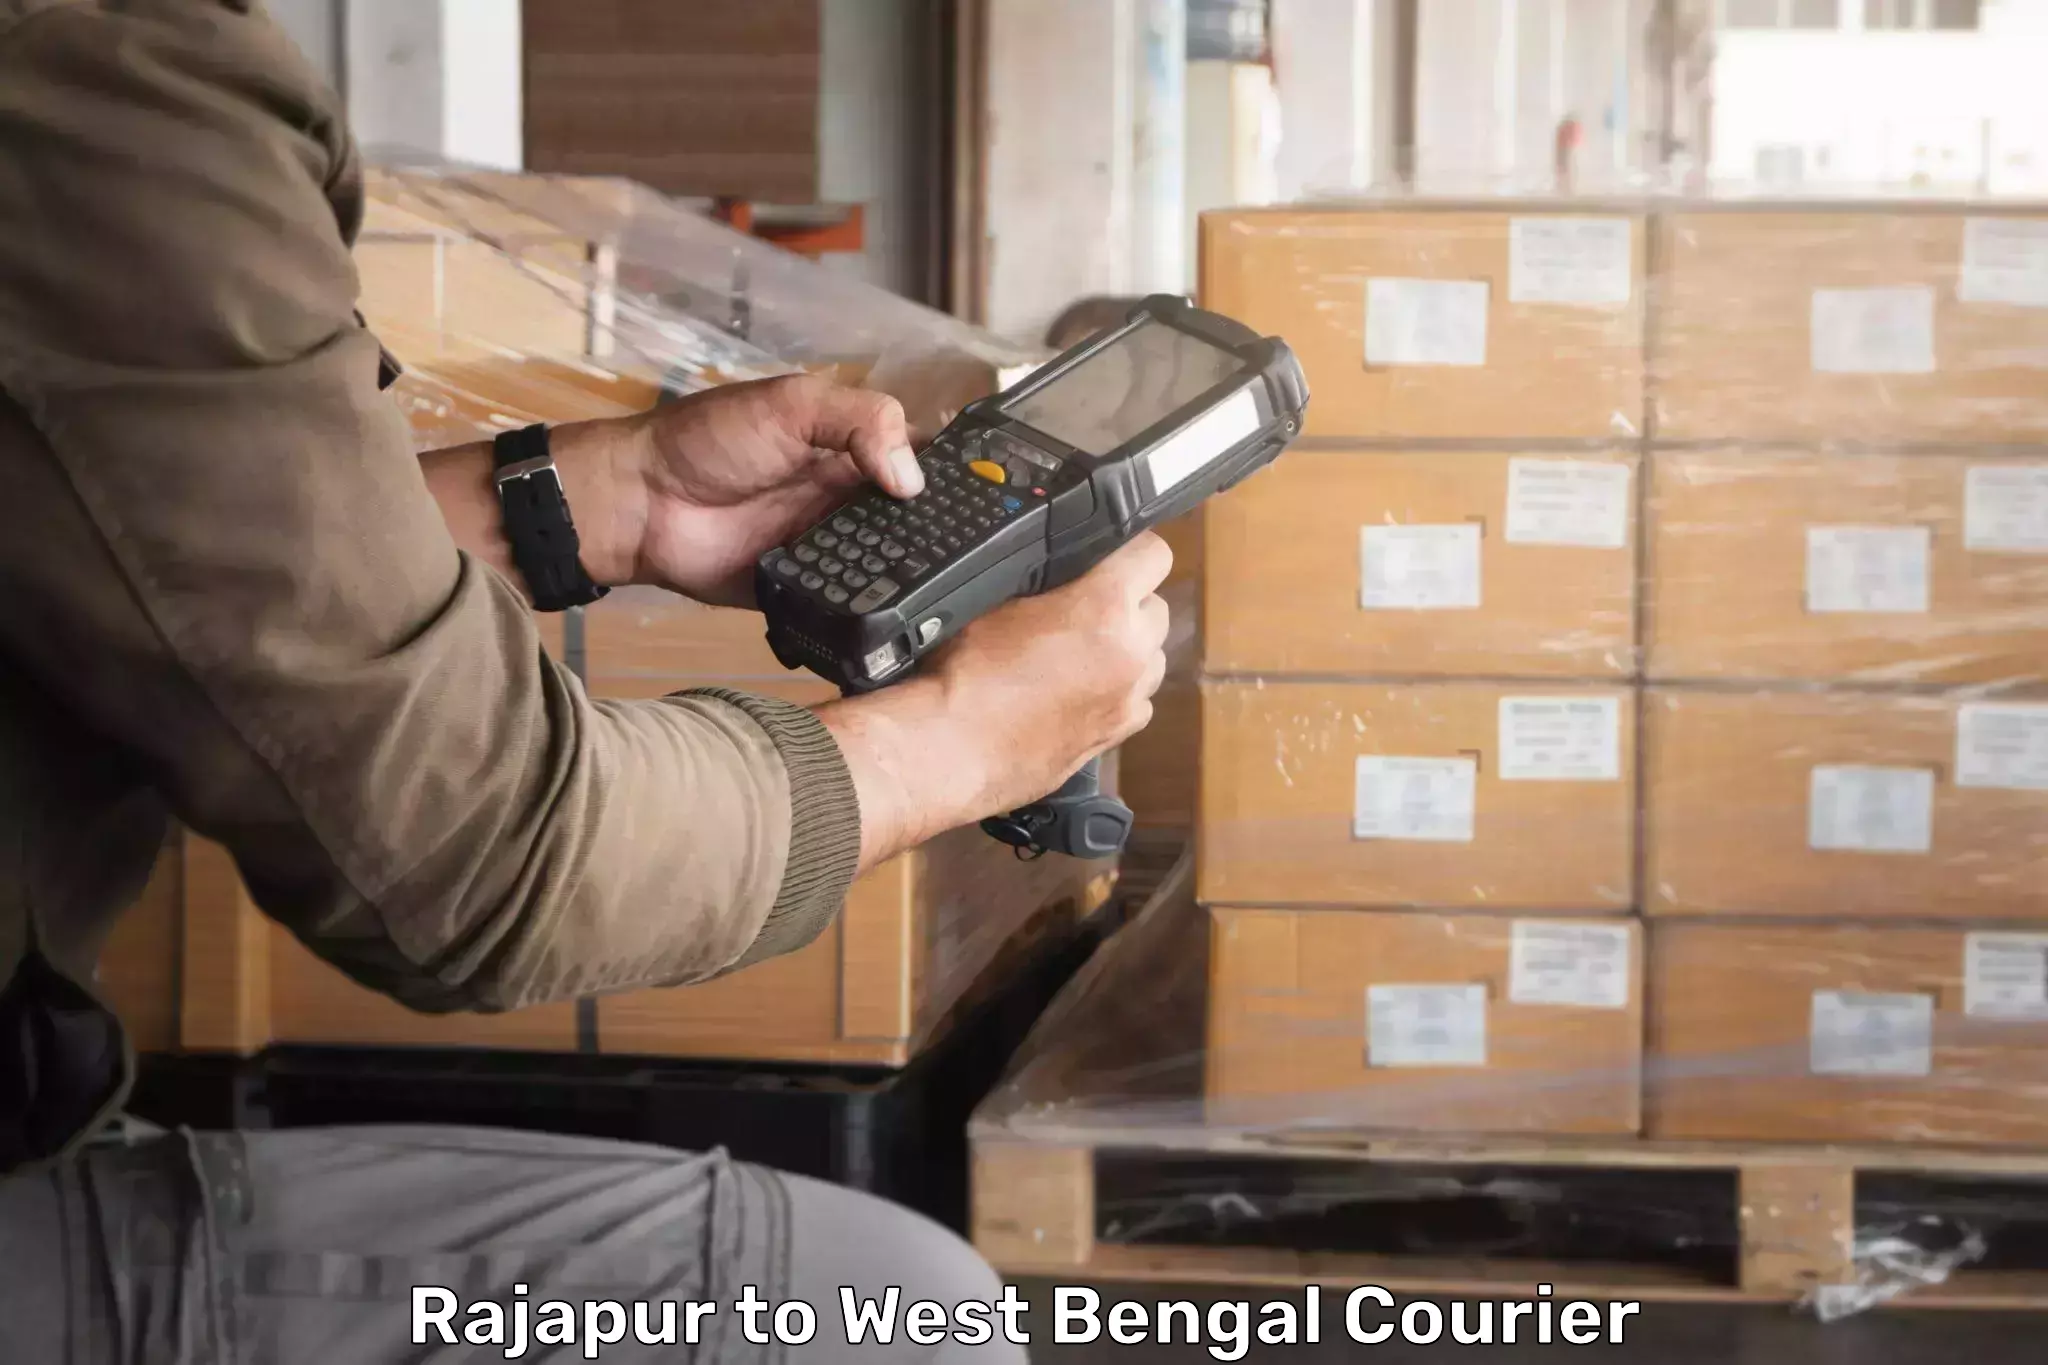 Premium courier services Rajapur to Baghmundi